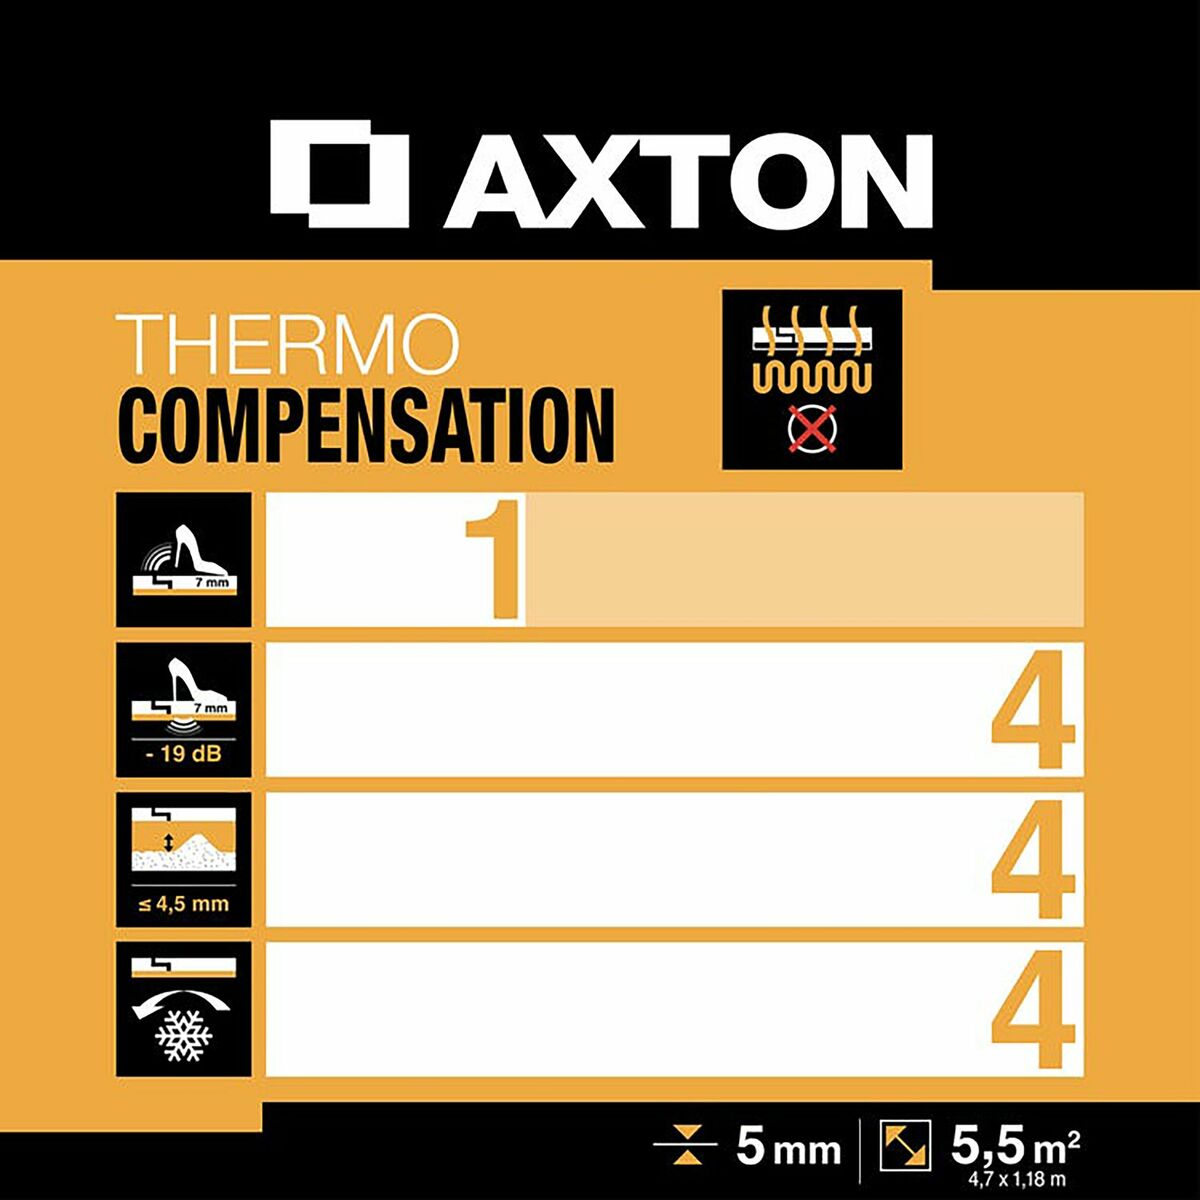 Podkład podłogowy Thermo compensation 5 mm 5.5m2 Axton